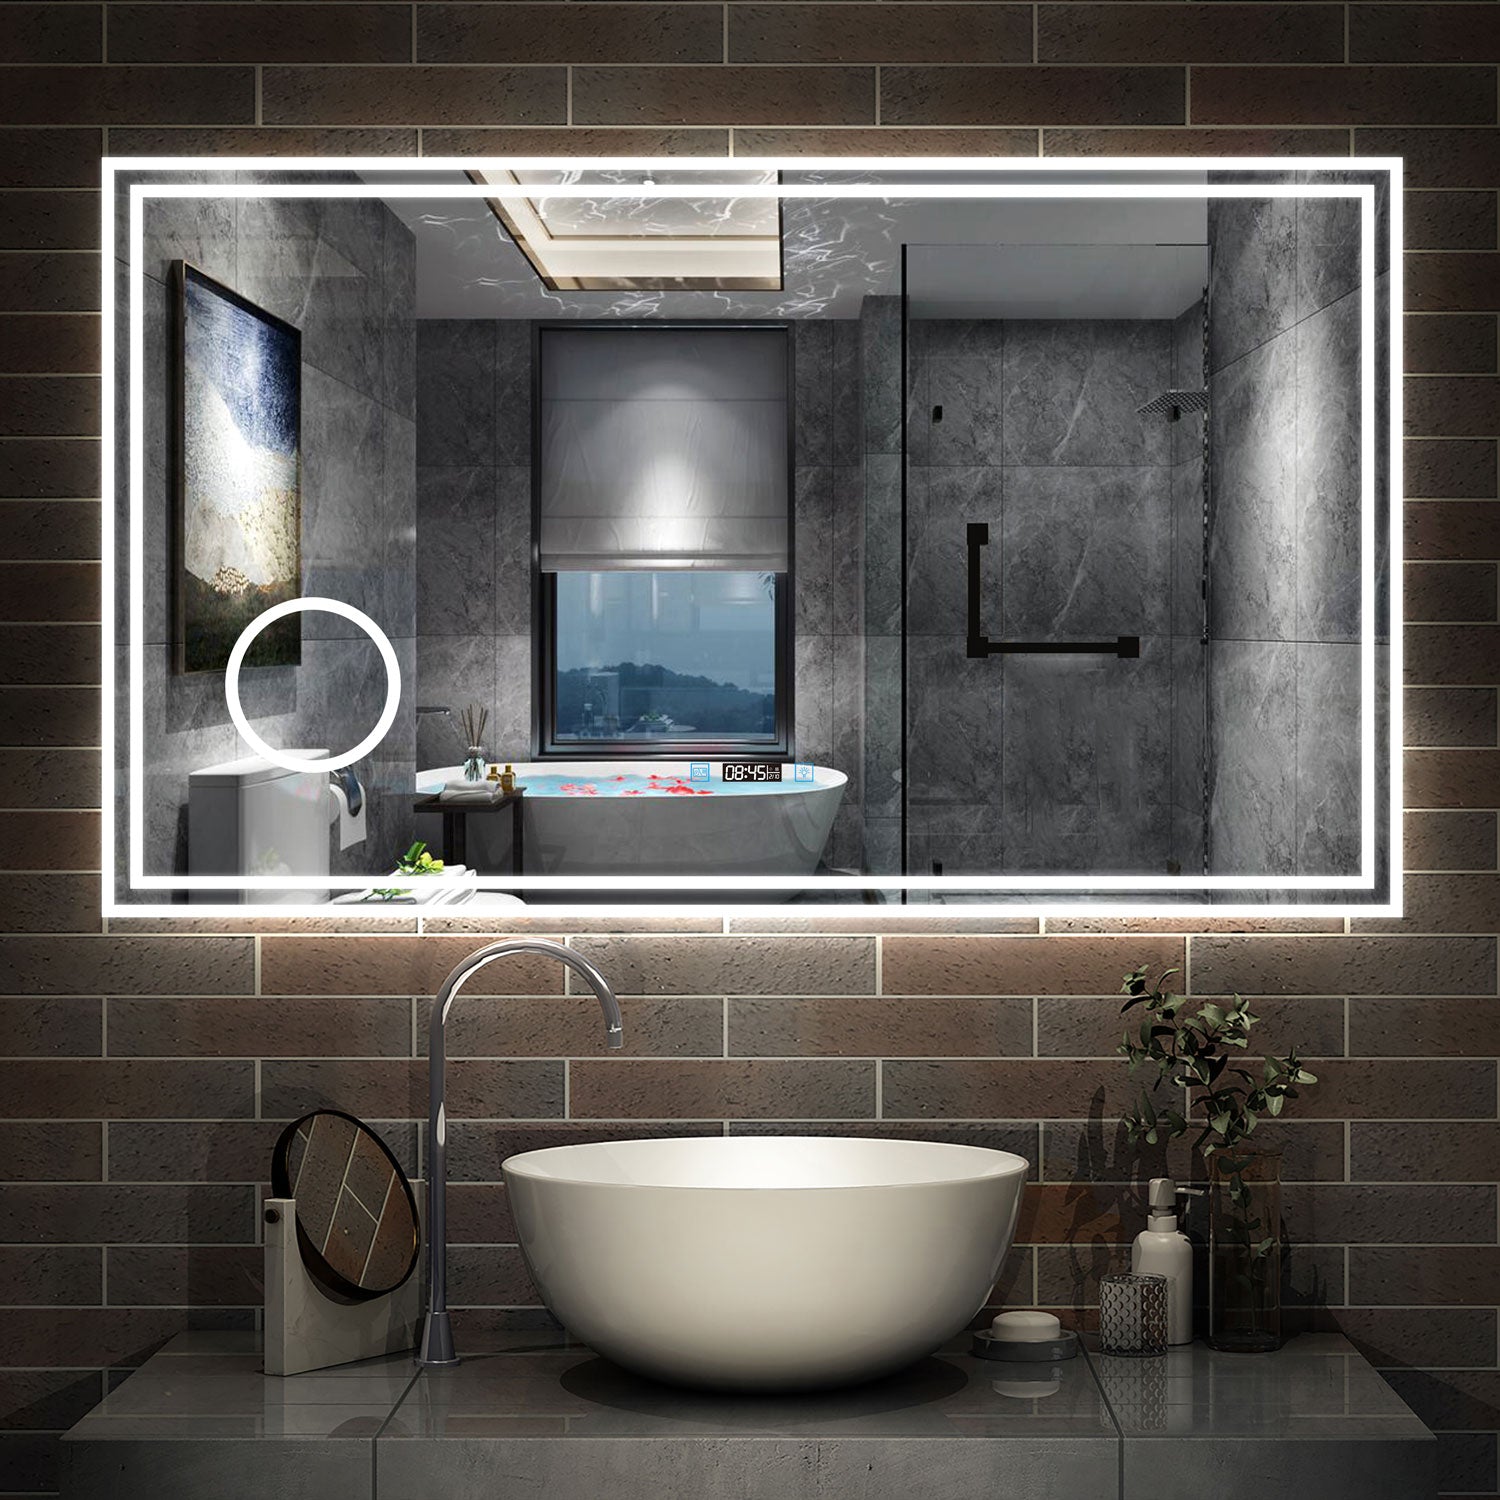 LED Badspiegel 80 -160 cm Wandspiegel mit Uhr, Touch, Beschlagfrei,3-F –  Aica Sanitaer